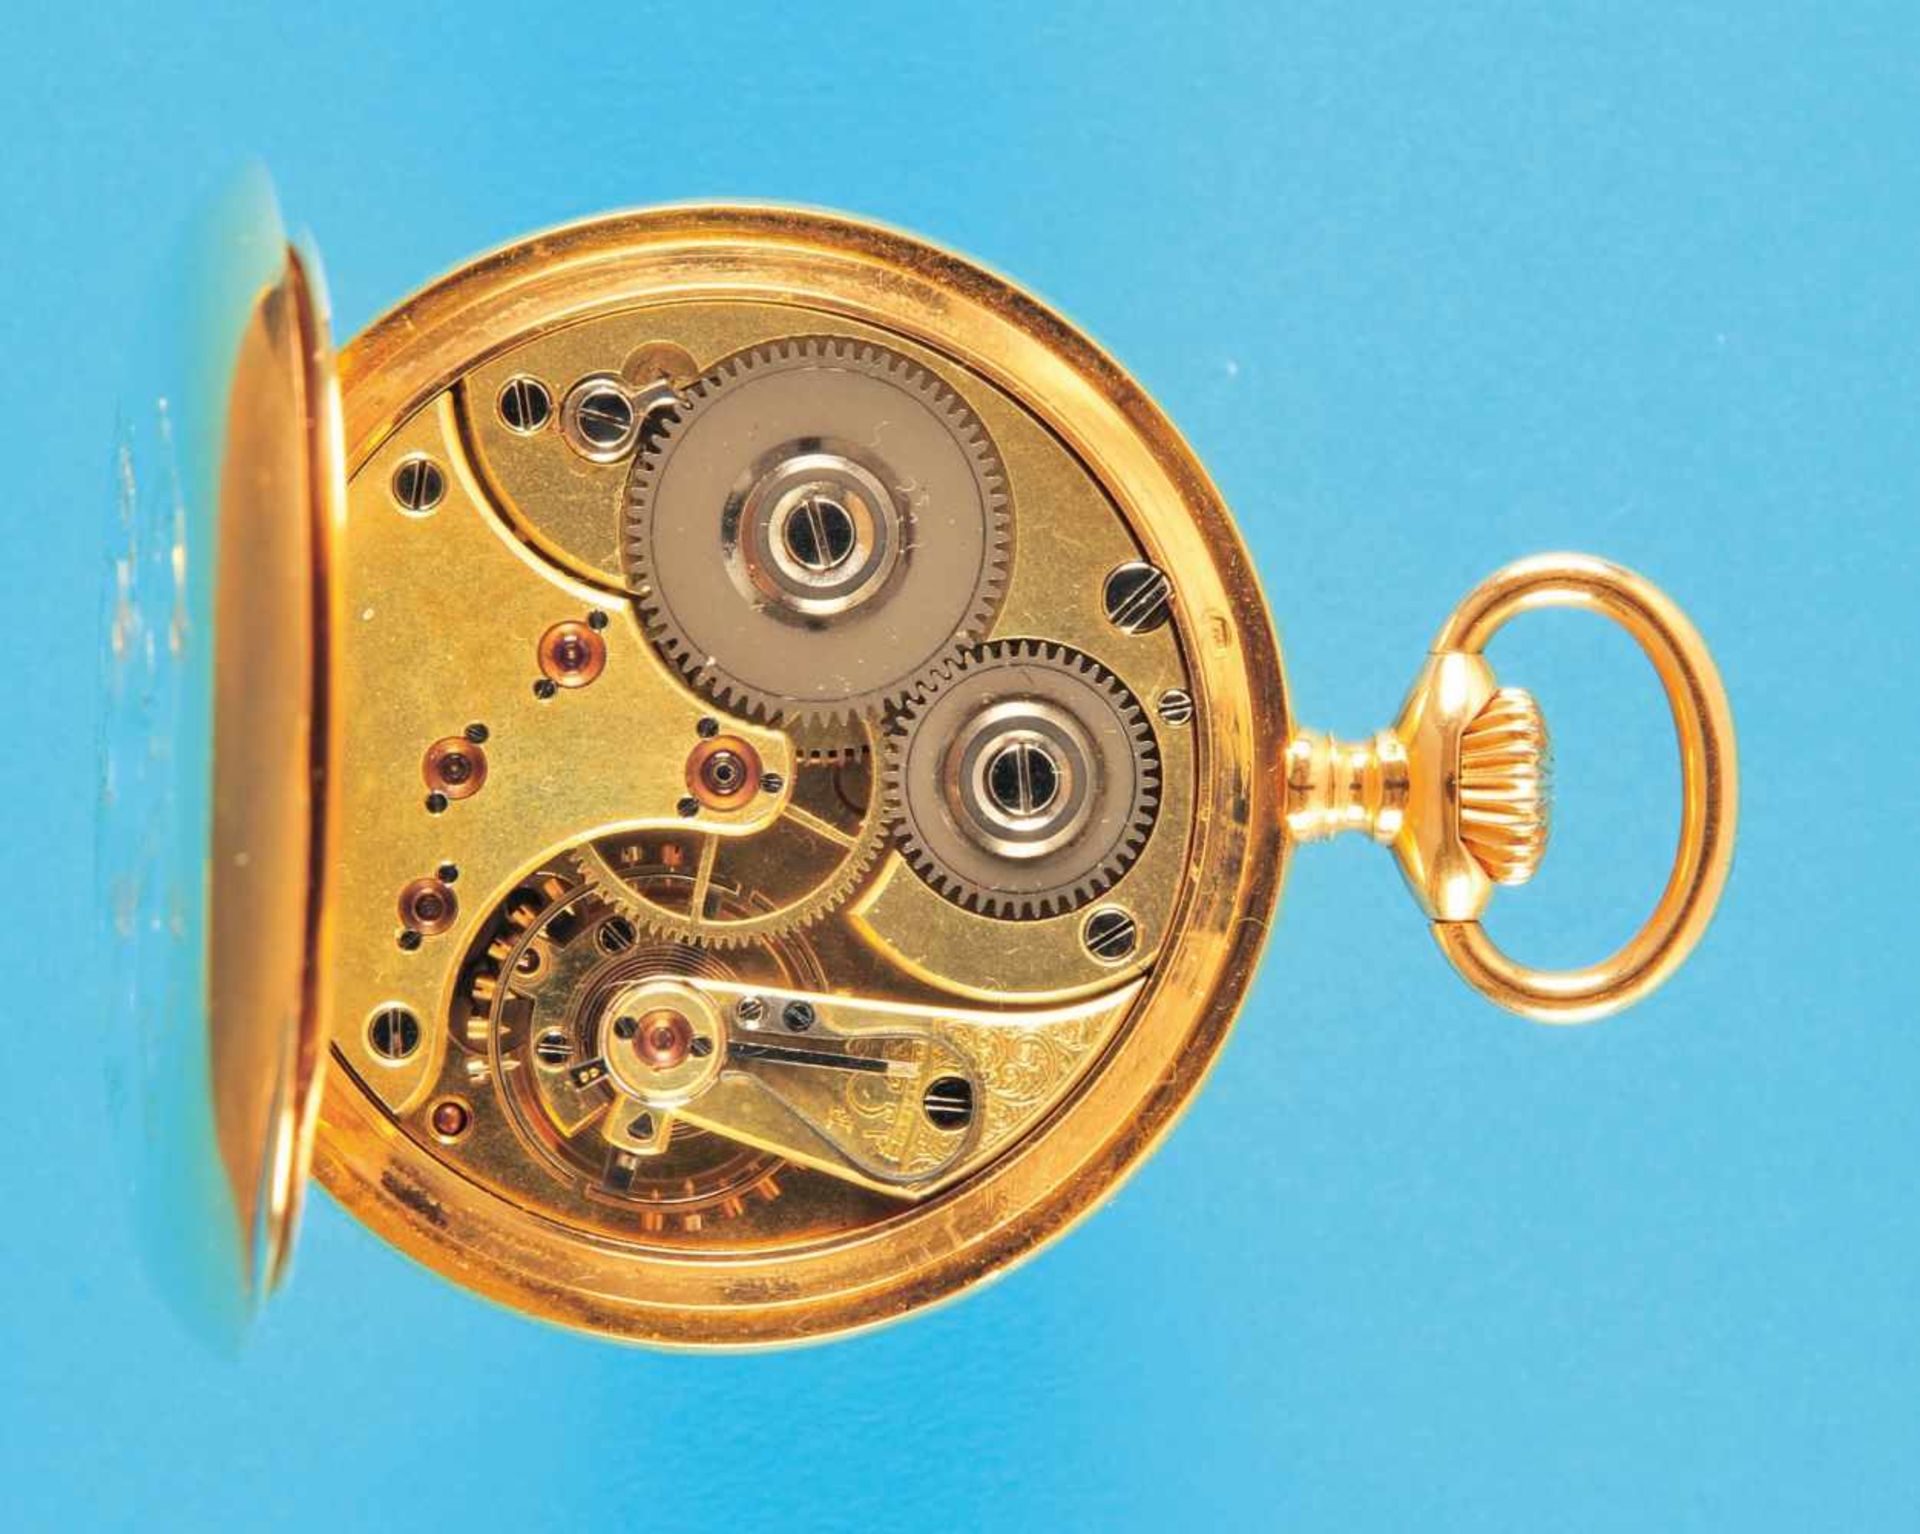 Omega Goldtaschenuhr, mit Patentschrift, glattes monogrammiertes 18-Gehäuse, Emailzifferblatt mit